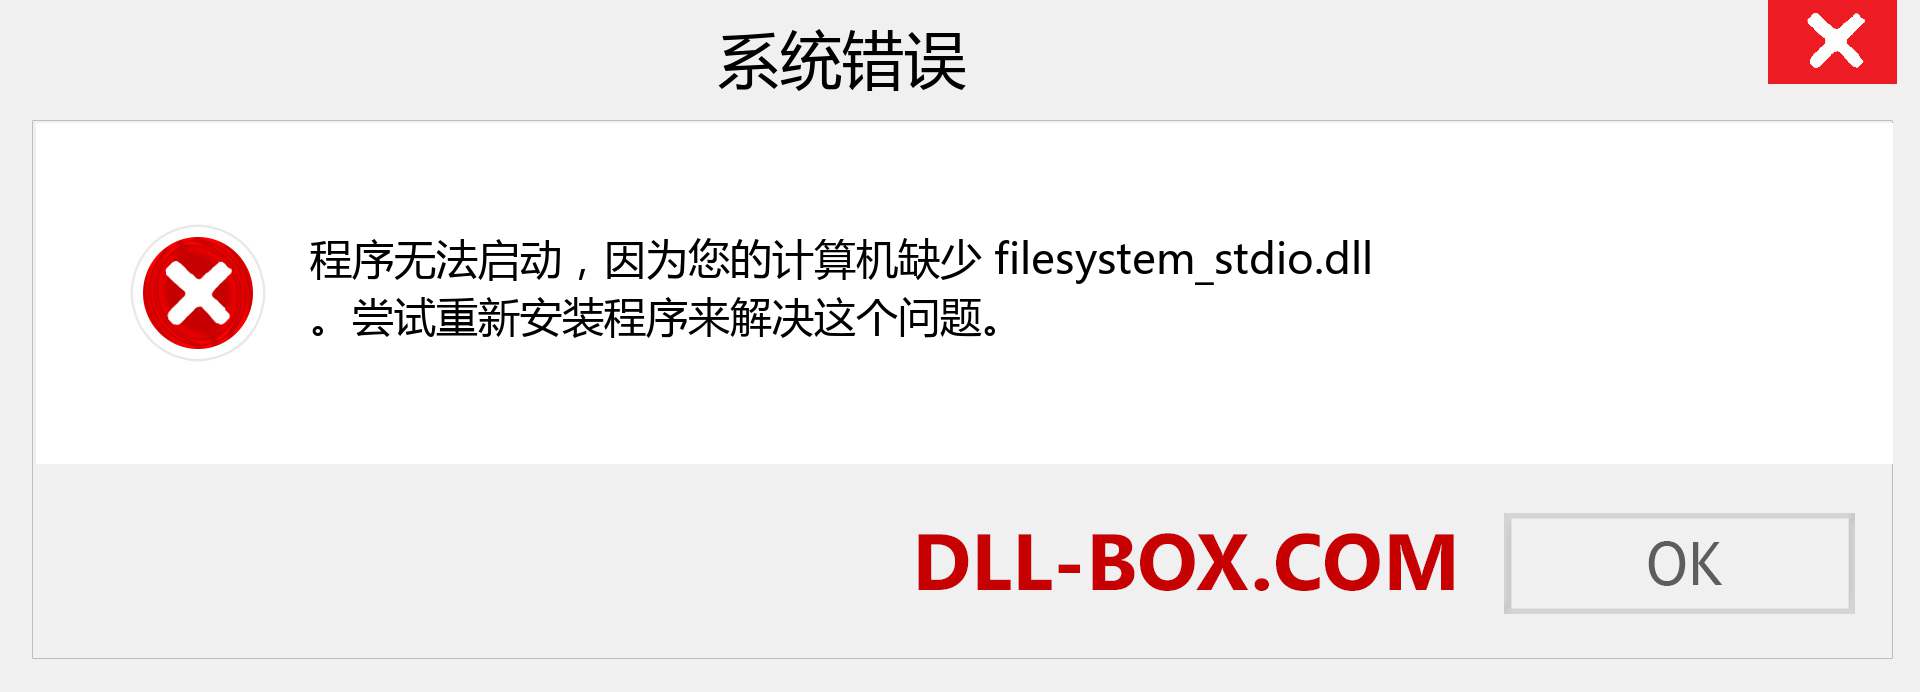 filesystem_stdio.dll 文件丢失？。 适用于 Windows 7、8、10 的下载 - 修复 Windows、照片、图像上的 filesystem_stdio dll 丢失错误